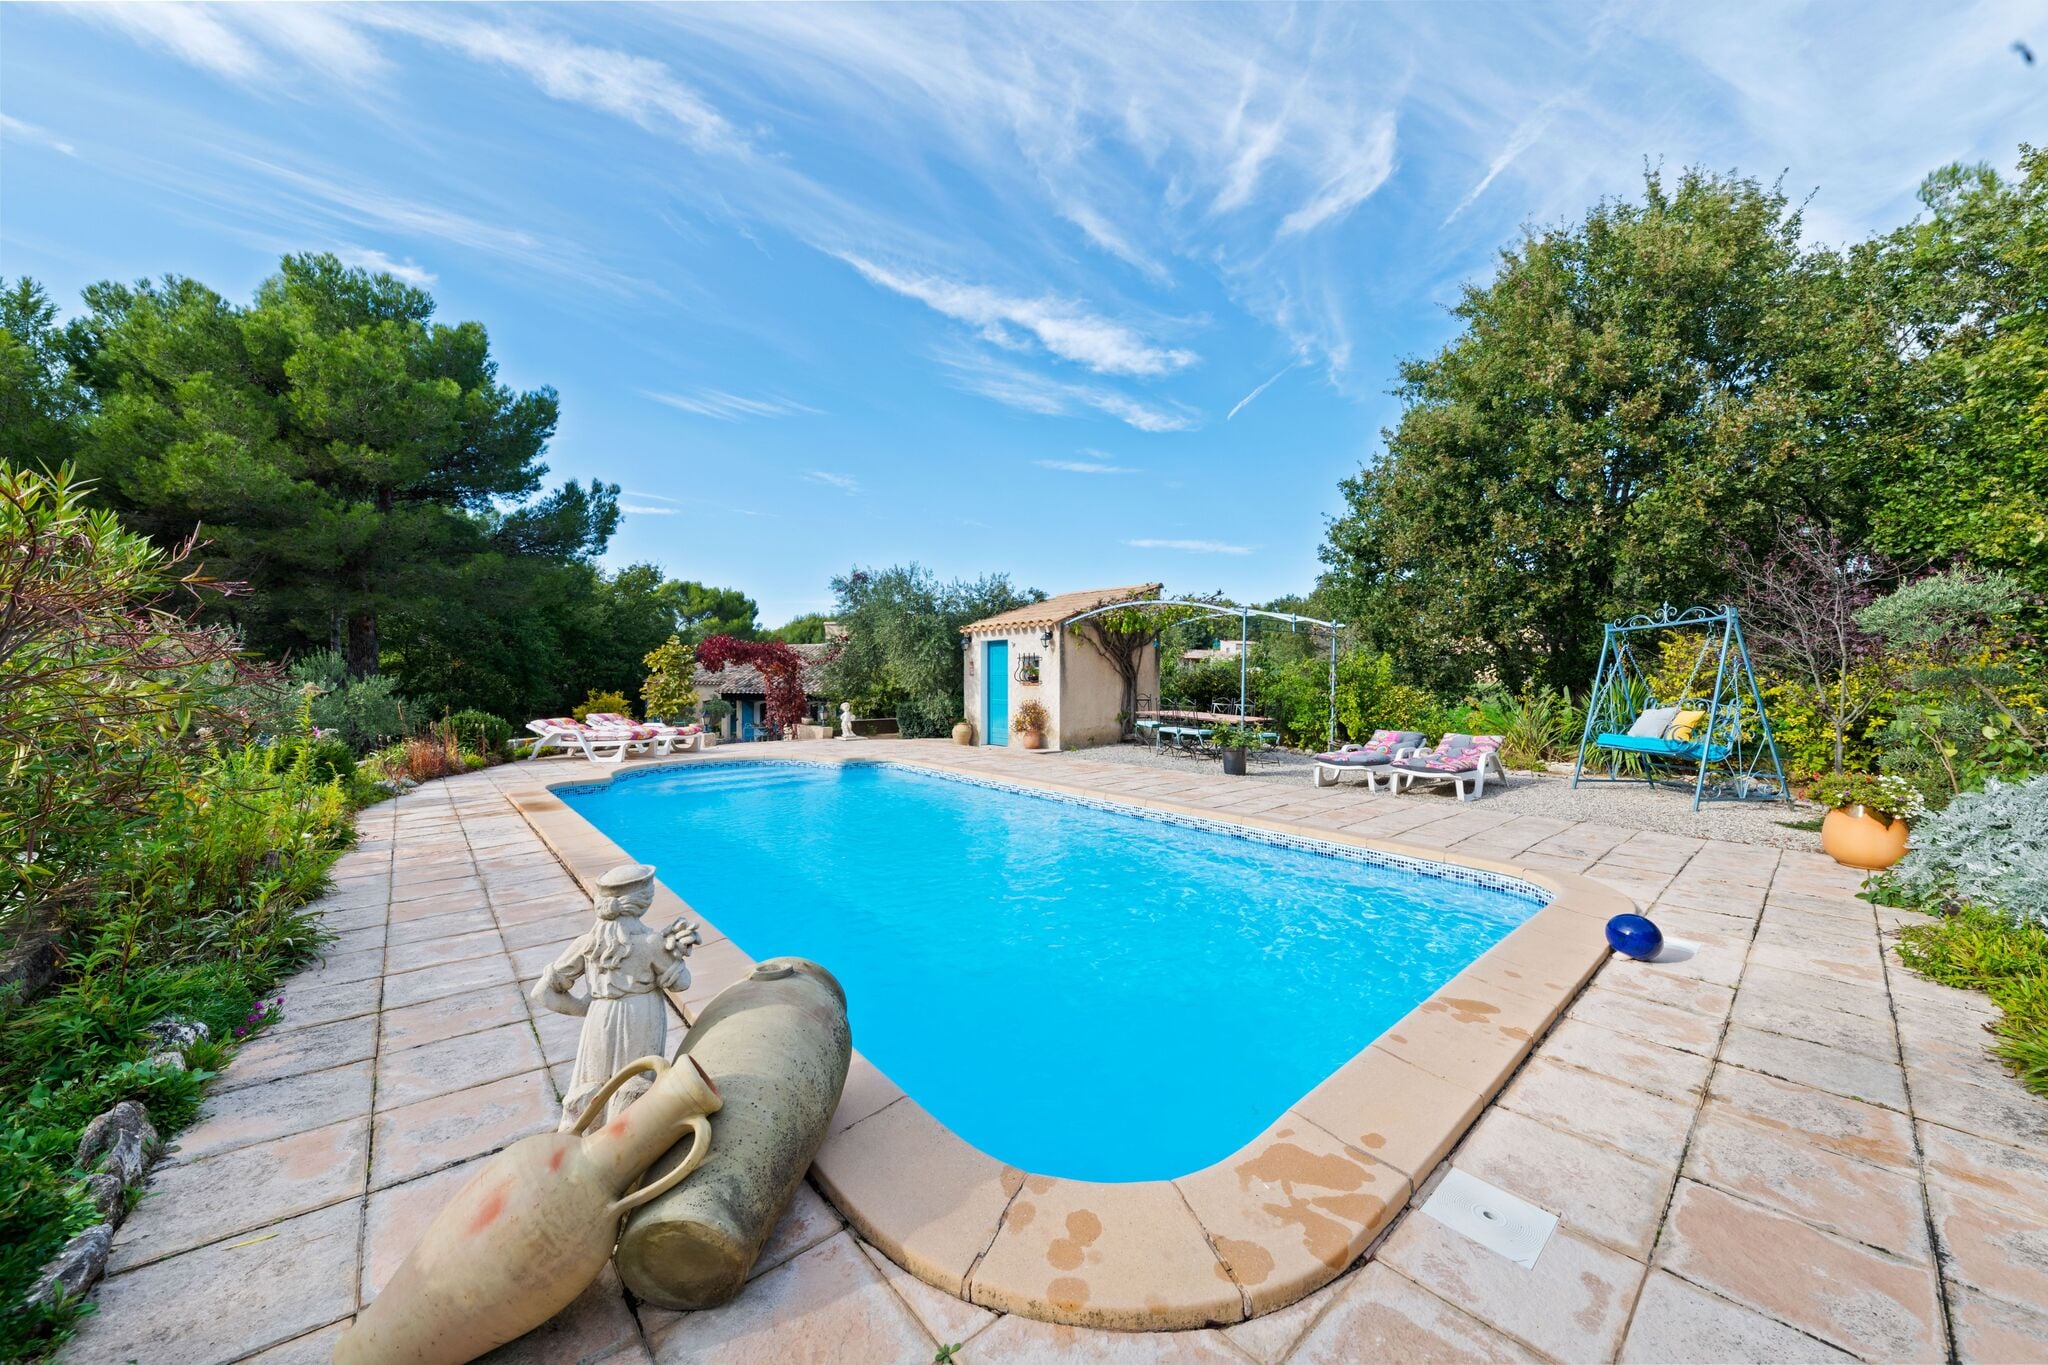 Maison de vacances moderne avec piscine privée à Lambesc